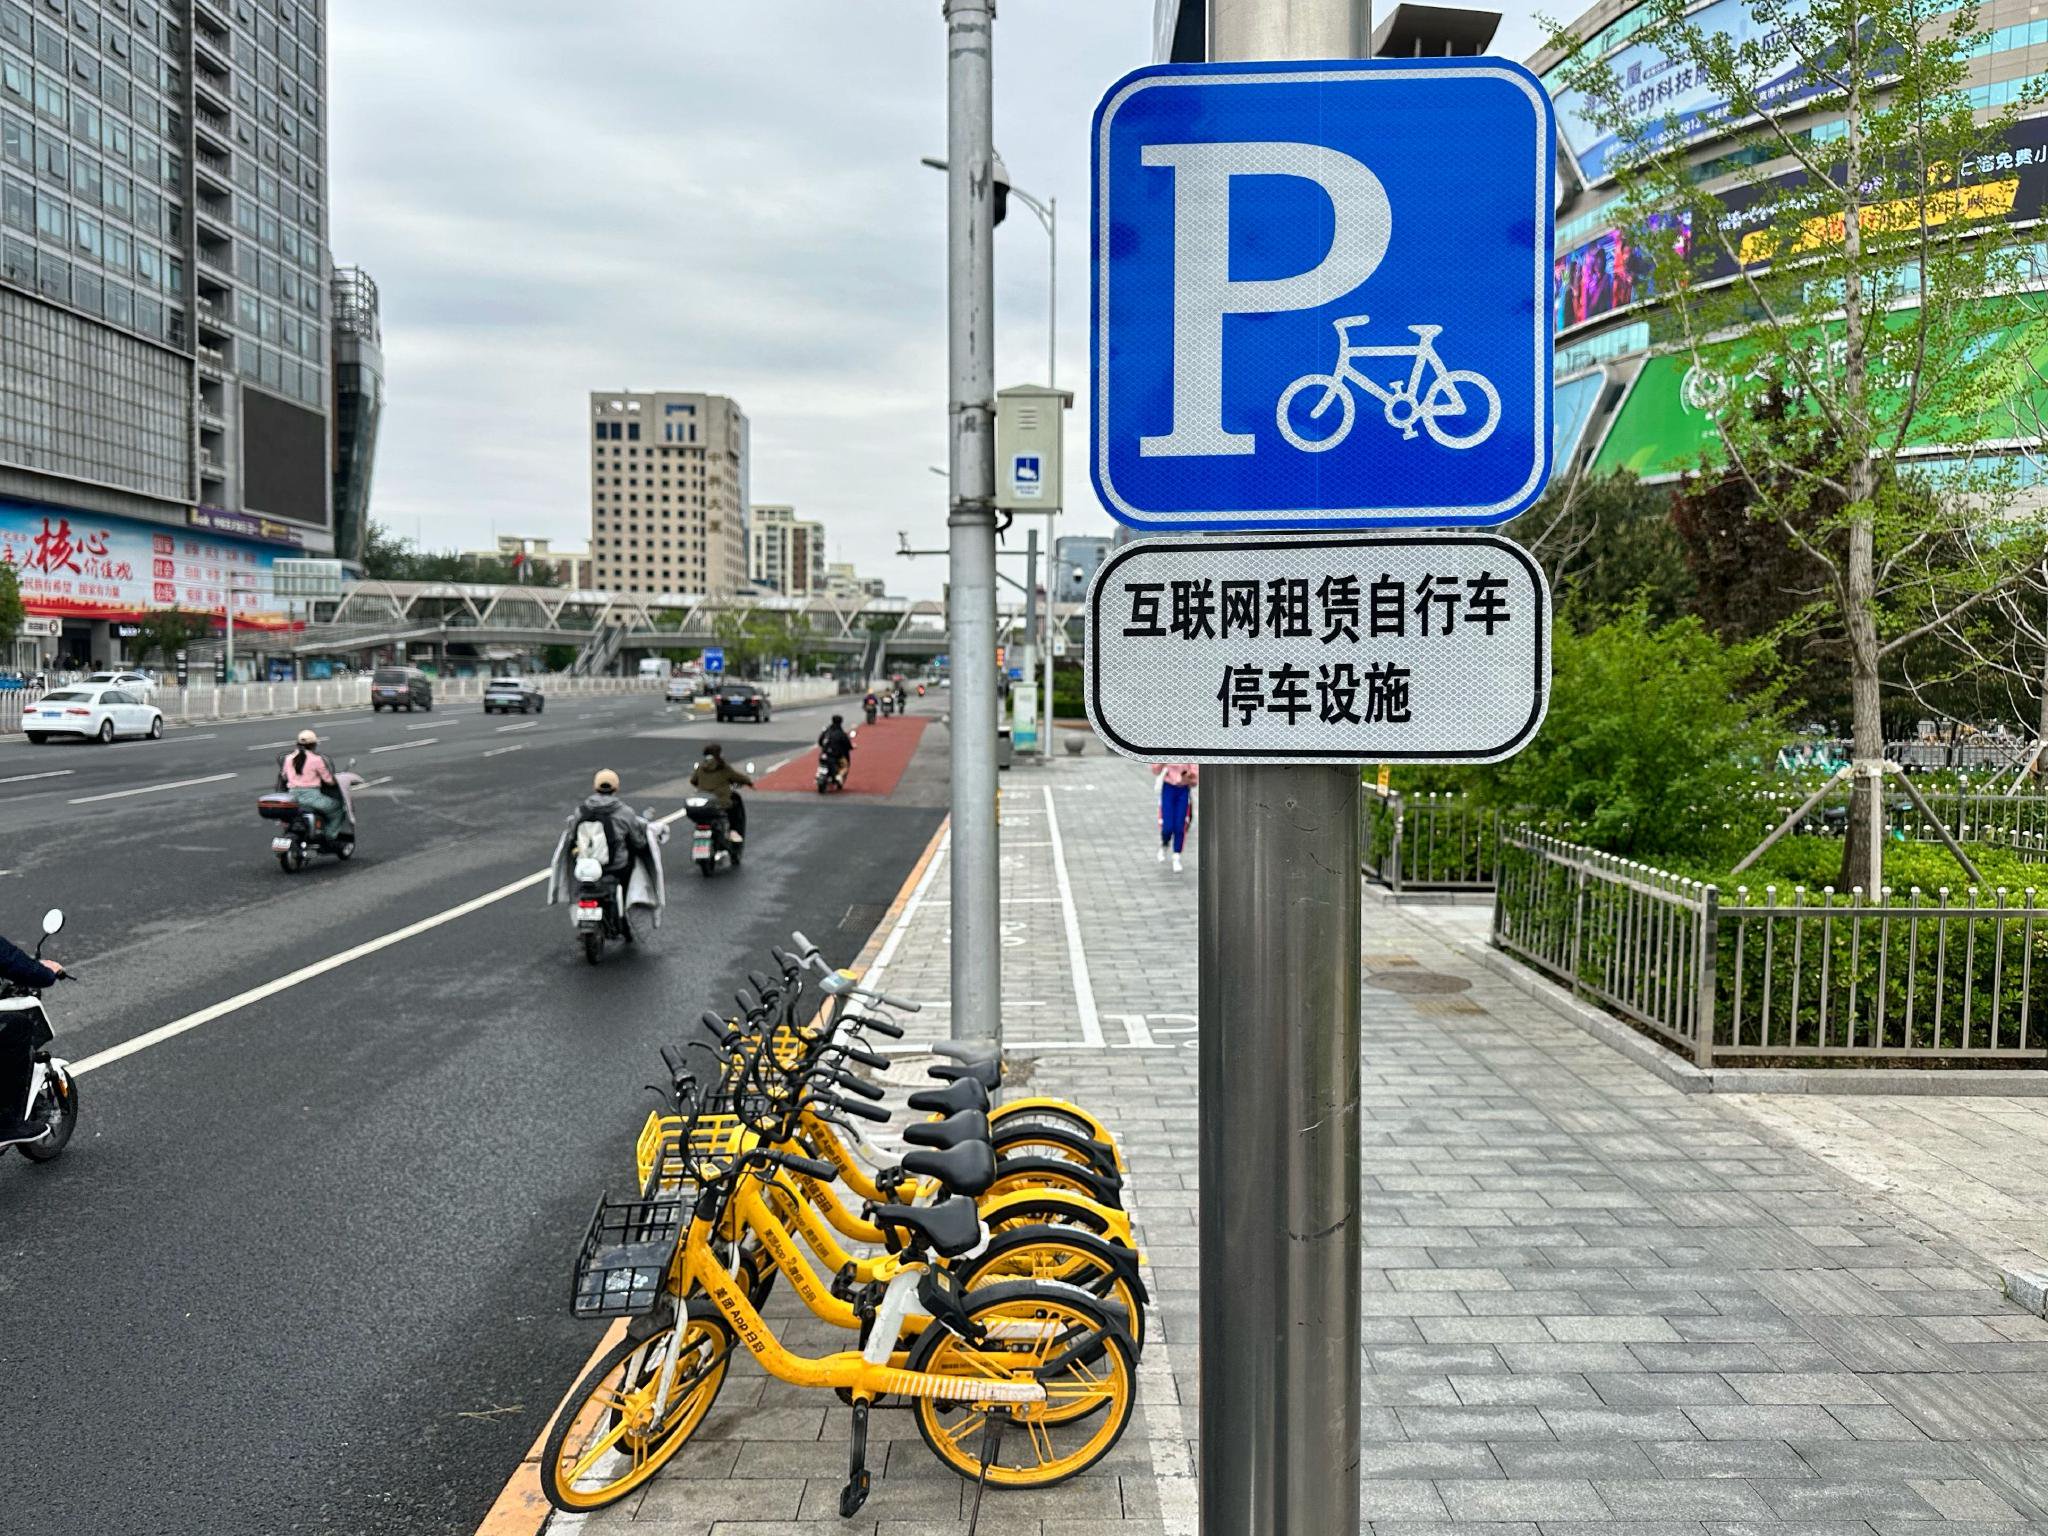 增設的共享單車停放區及相關標識。新京報記者 裴劍飛 攝